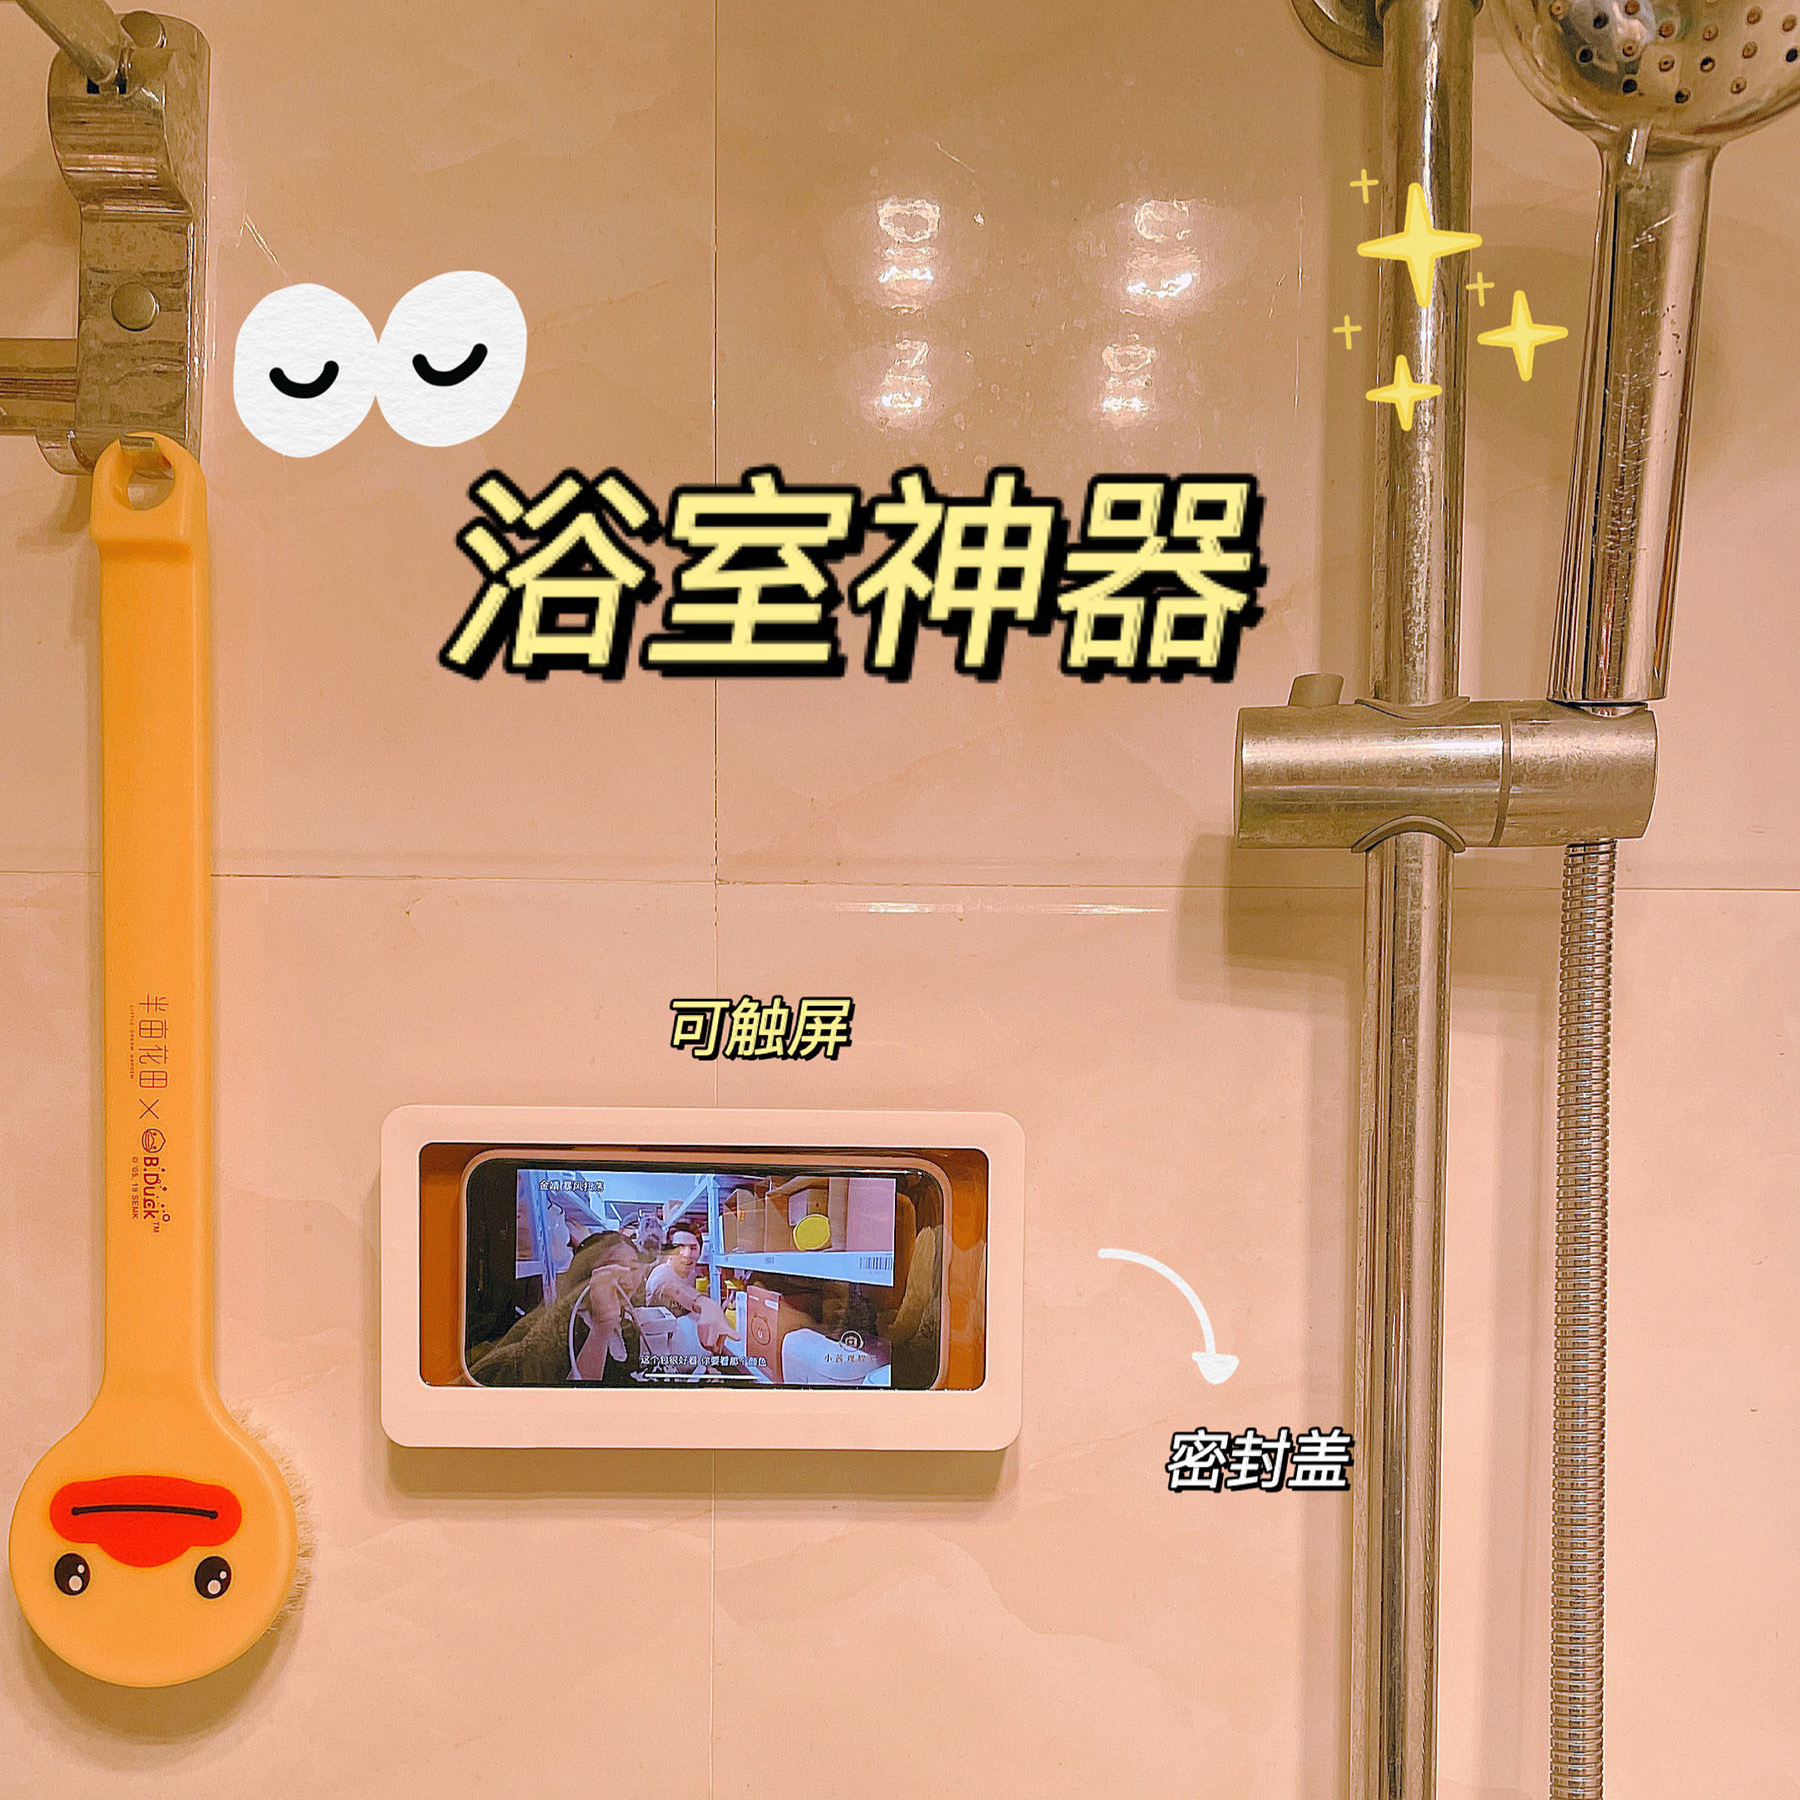 浴室防水手机盒洗澡看电视追剧神器卫生间厕所壁挂懒人支架置物架